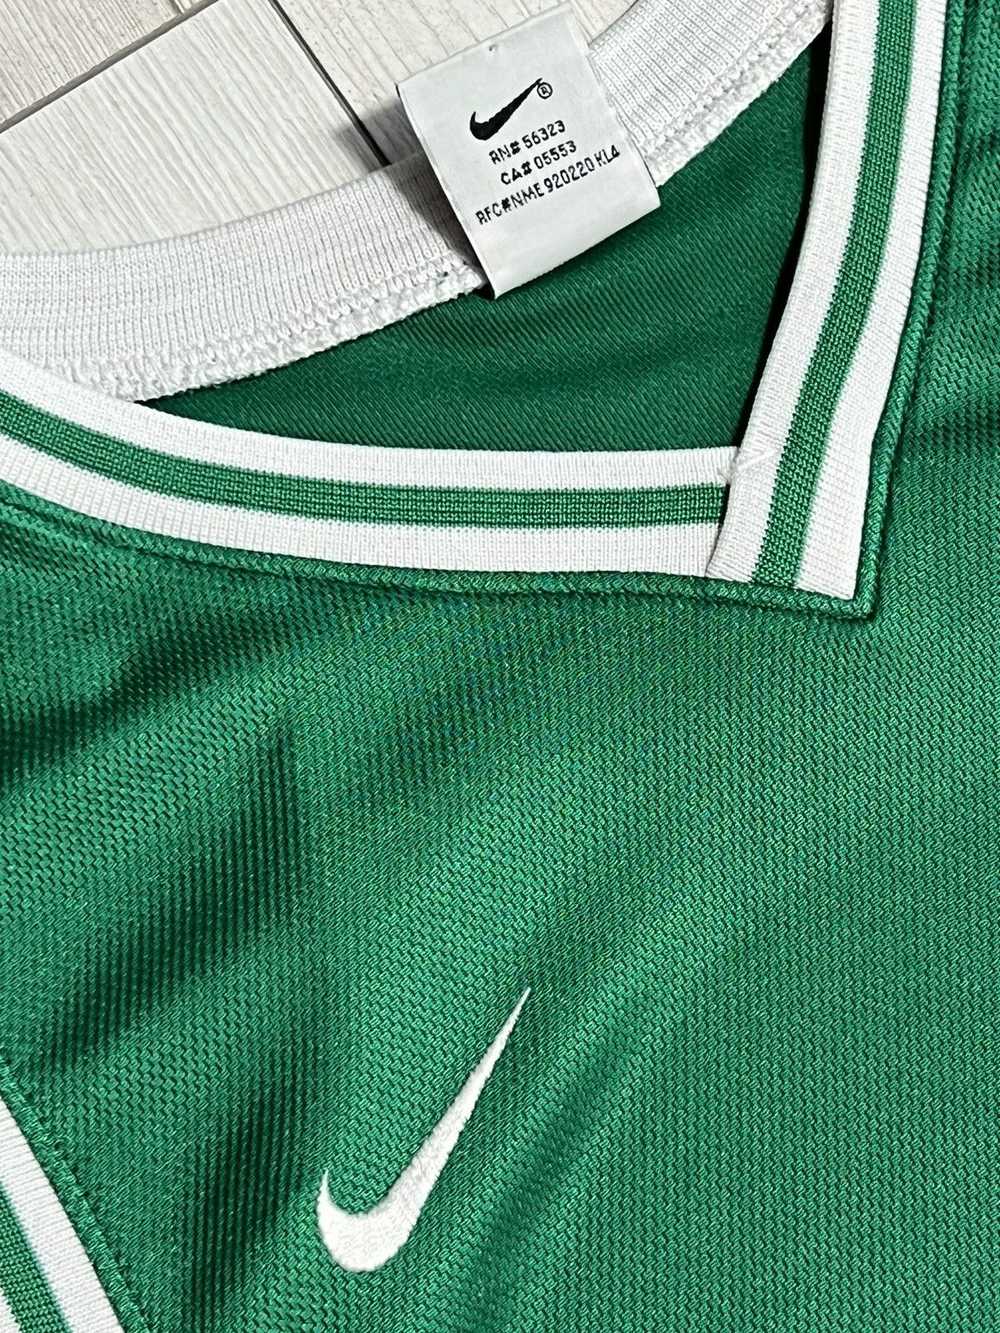 1990x Clothing × NBA × Nike Basketball shirt 90s … - image 4